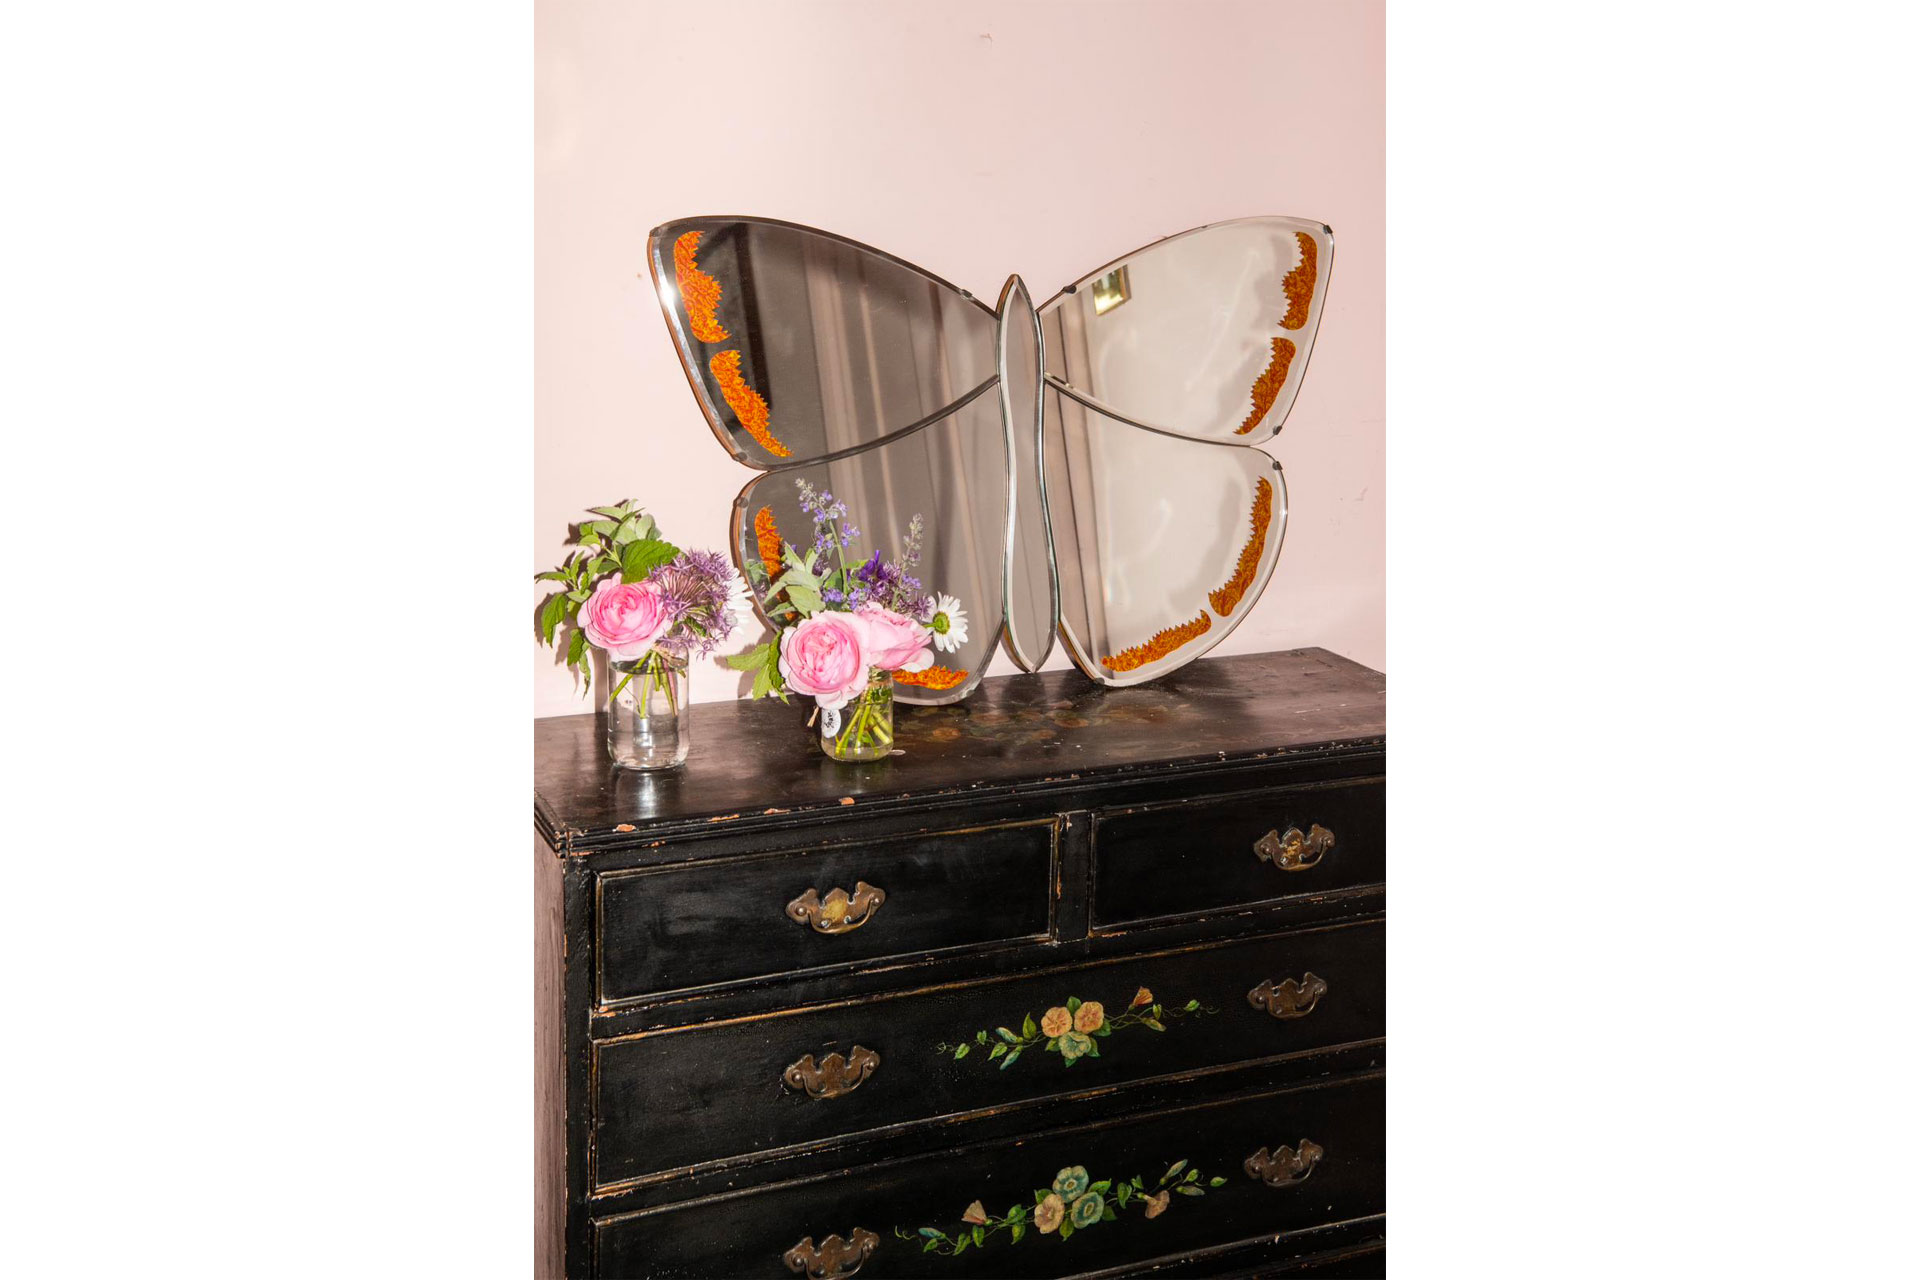 Pearl Lowe's butterfly mirror